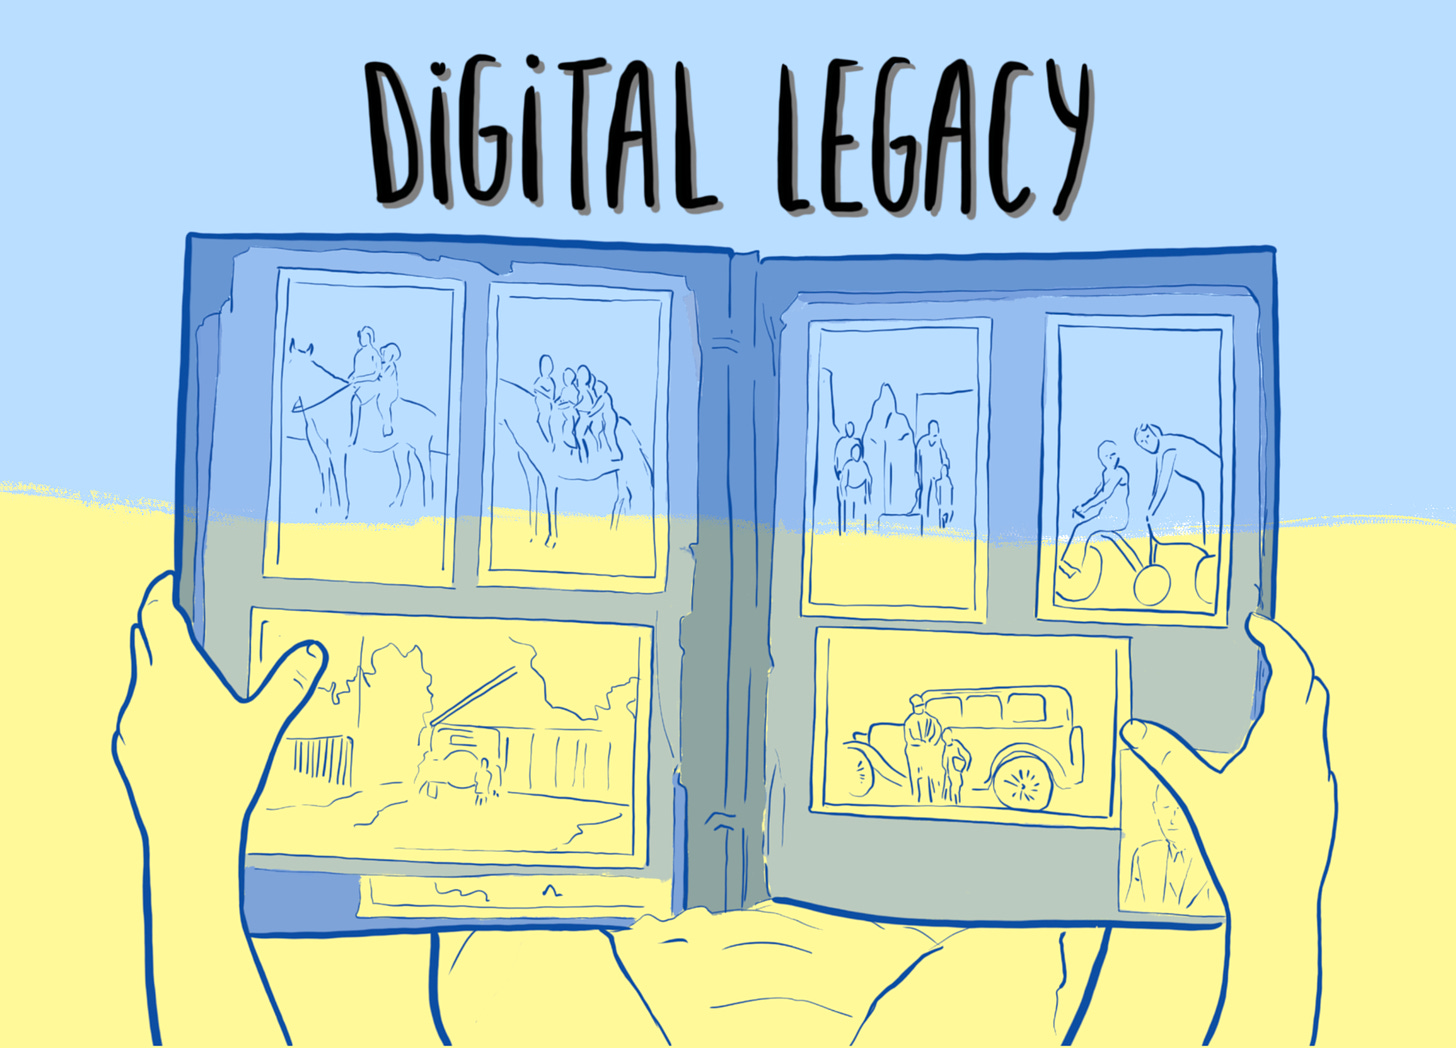 Digital Legacy - Digital Hygiene by Denys Kulyk